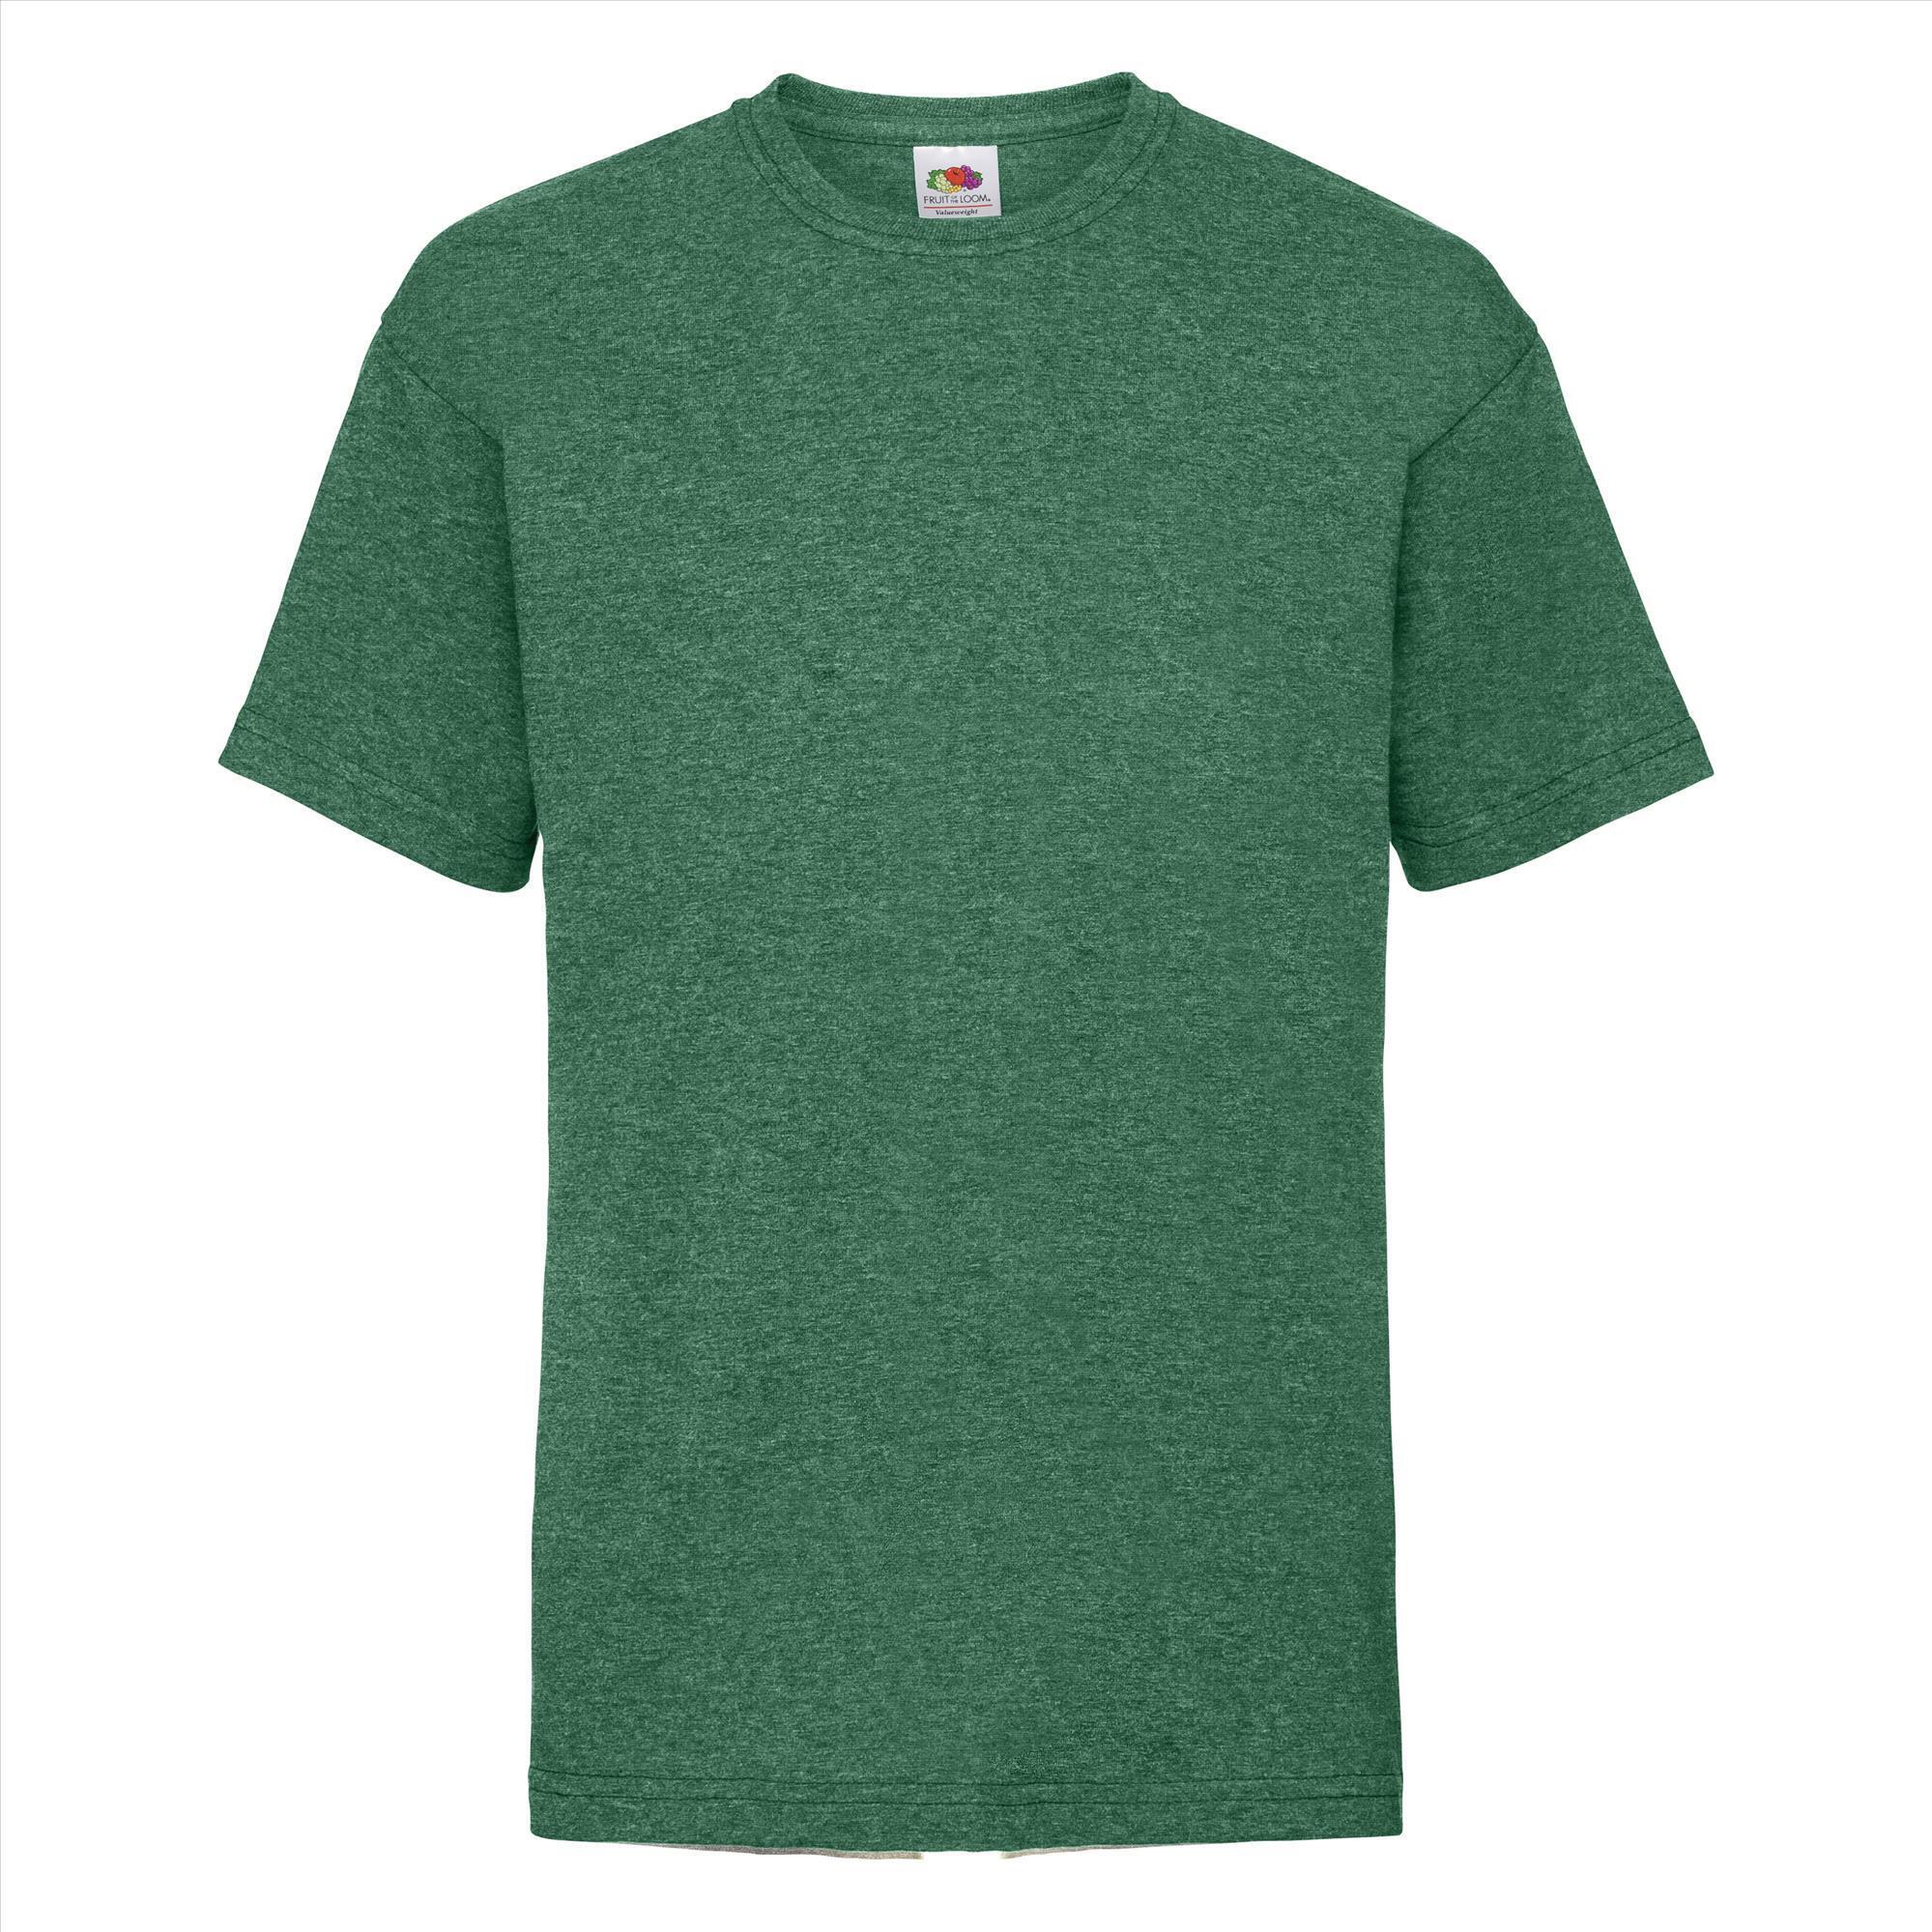 Gepersonaliseerde Kinder T-shirt retro heather green Kinderkleding bedrukken